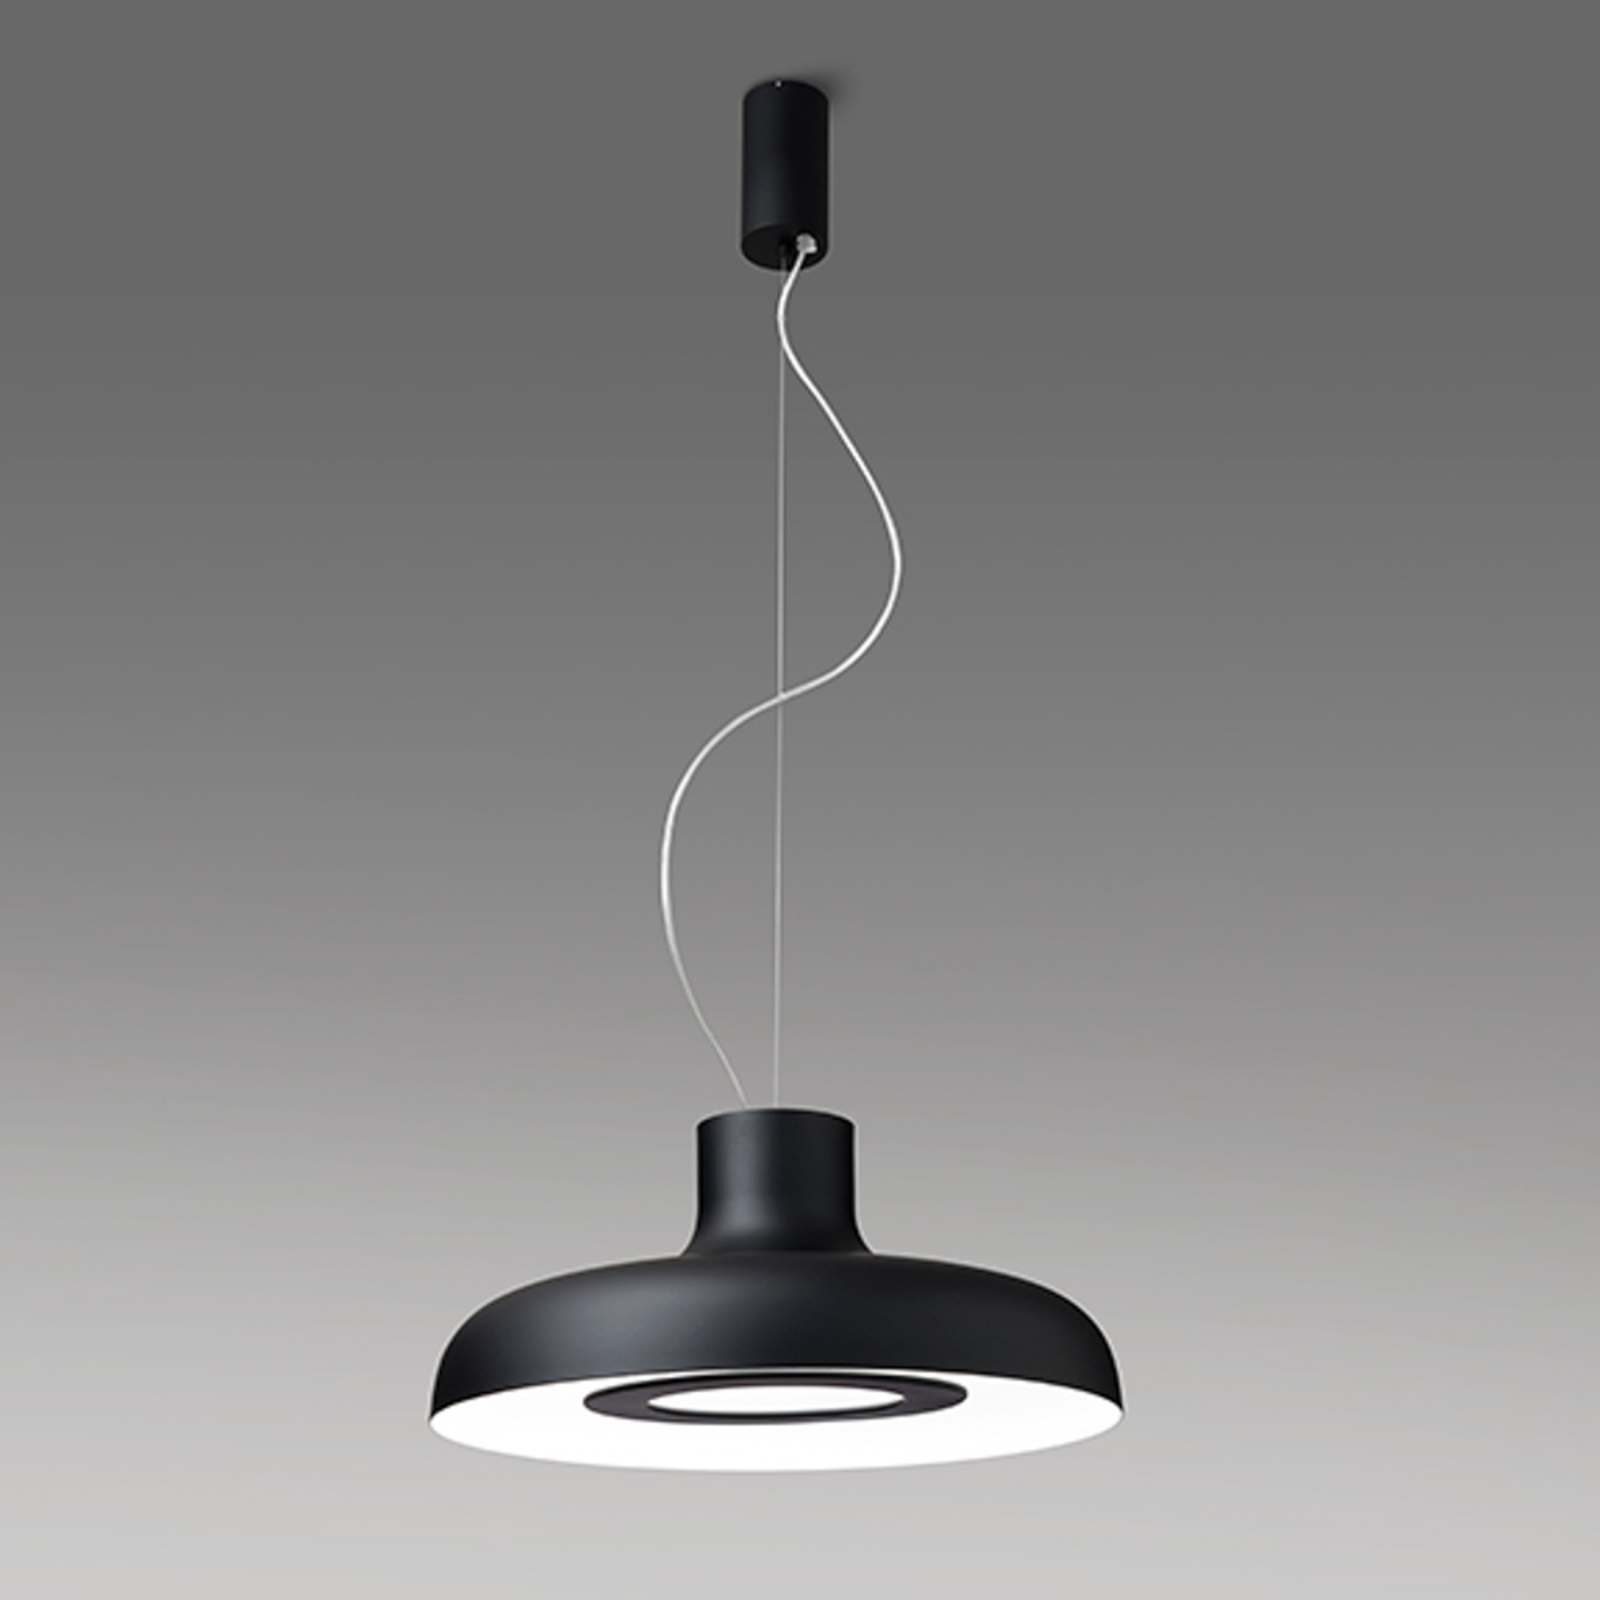 ICONE Duetto Lampă suspendată cu LED-uri 927 Ø35cm negru/alb